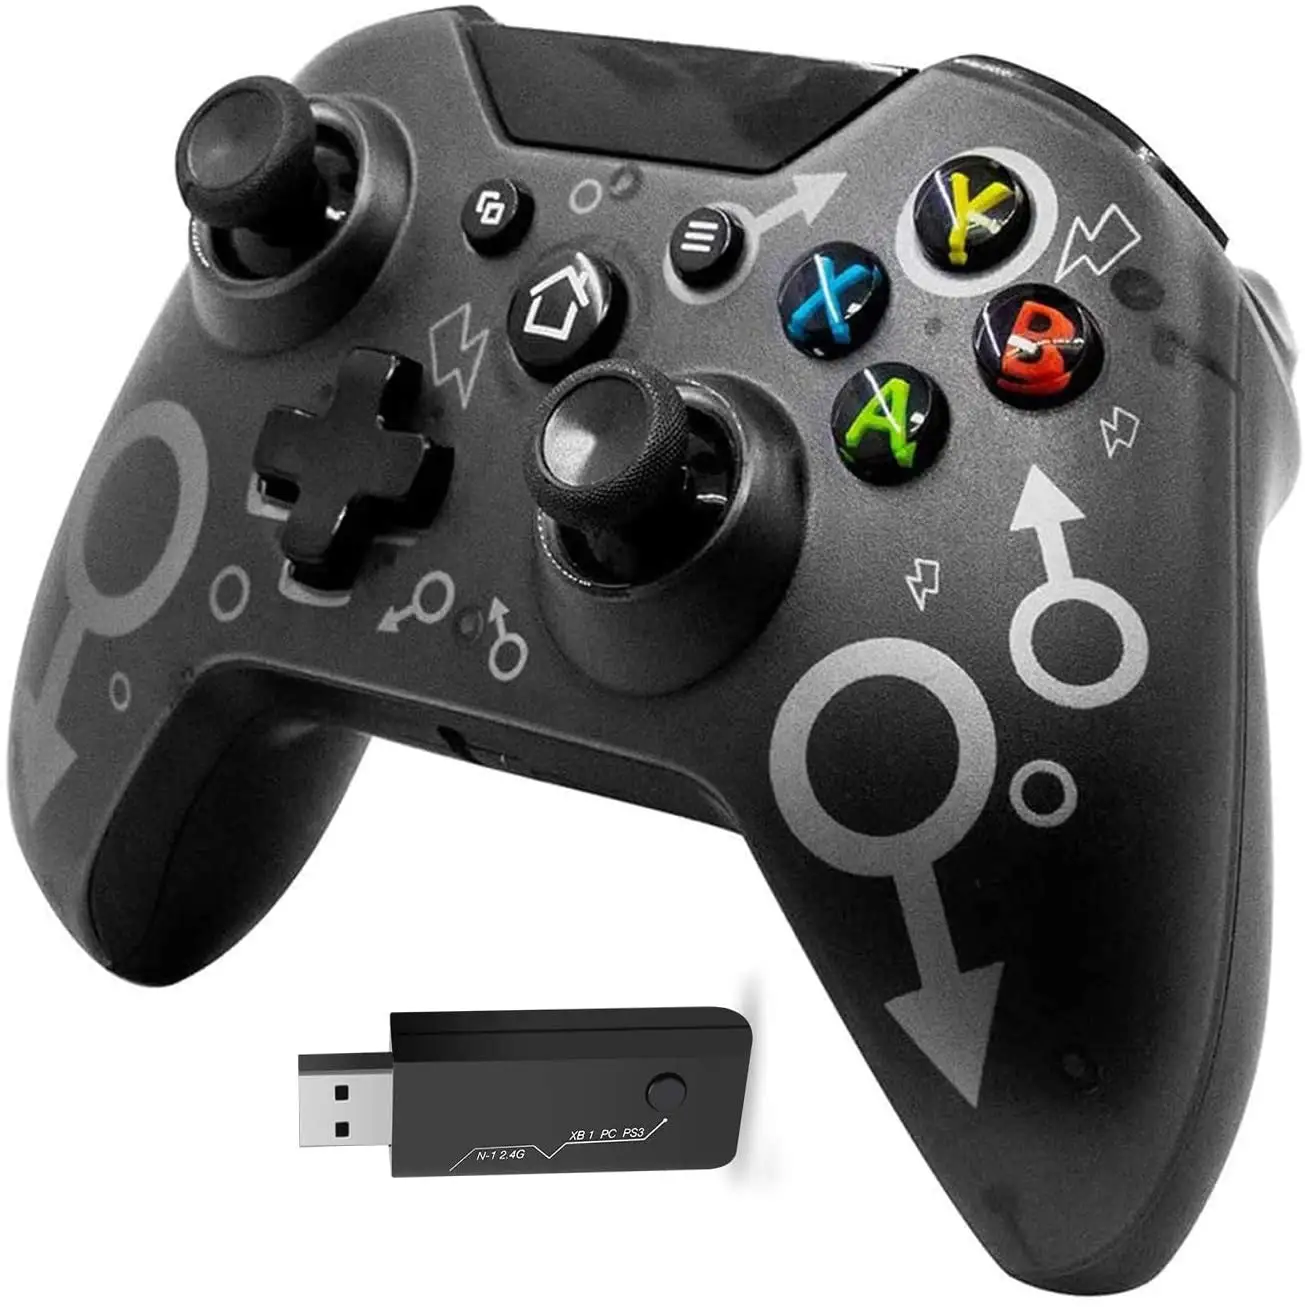 Controle Sem Fio de 2.4GHz, Gamepad com Vibração Dupla, Ideal para Xbox One, One S, One X, PS3, PC Windows 7, 8, 8.1, 10